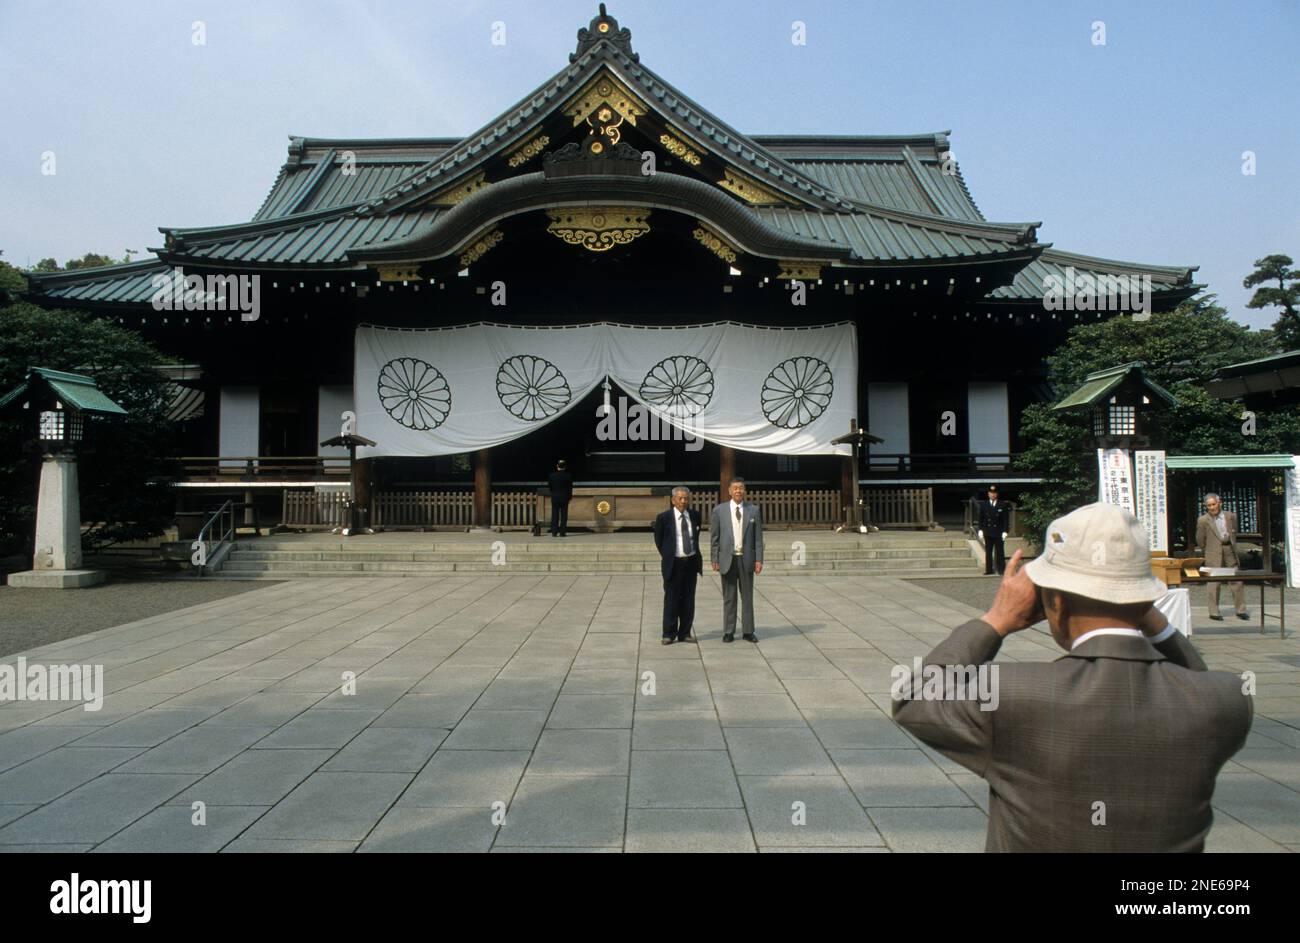 Japon, Tokyo, Chiyoda, sanctuaire Yasukuni Jinja, le sanctuaire dédié aux vies perdues en action. Un touriste japonais a pris sa photo devant le shr. Banque D'Images